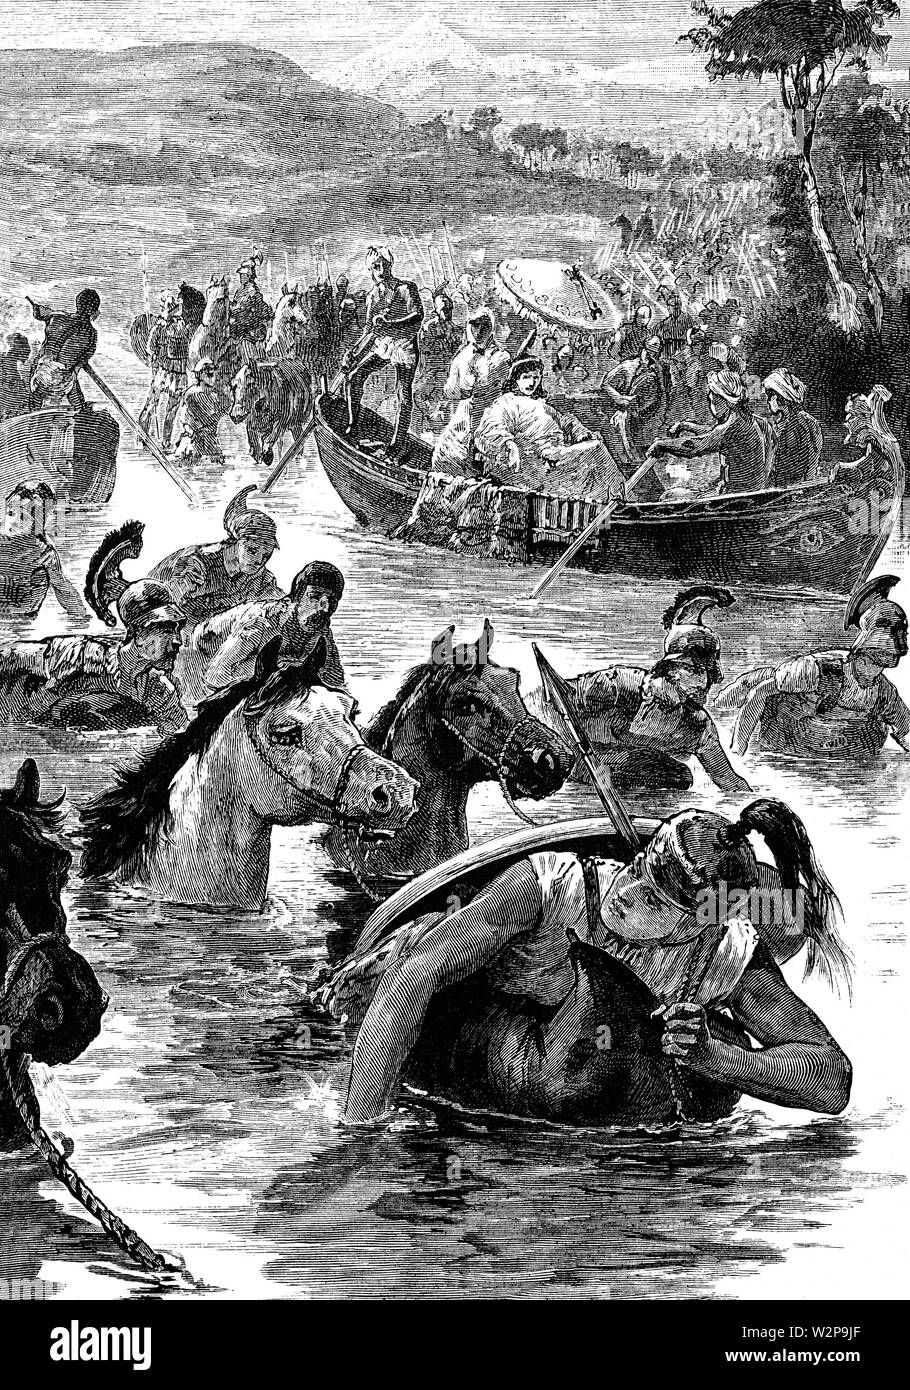 La batalla de Jaxartes fue una batalla librada en 329 A.C. por Alejandro Magno y su ejército macedonio contra los escitas en el río Jaxartes, ahora conocido como el río Syr Darya. El sitio de la batalla tuvo lugar justo al sur-oeste de la antigua ciudad de Tashkent en Uzbekistán. Los escitas fueron obligados a partir de las orillas del río por las poderosas catapultas y asedio arcos. Para los macedonios, ahora era fácil cruzar el Jaxartes, resultando en una victoria decisiva para los macedonios. Foto de stock